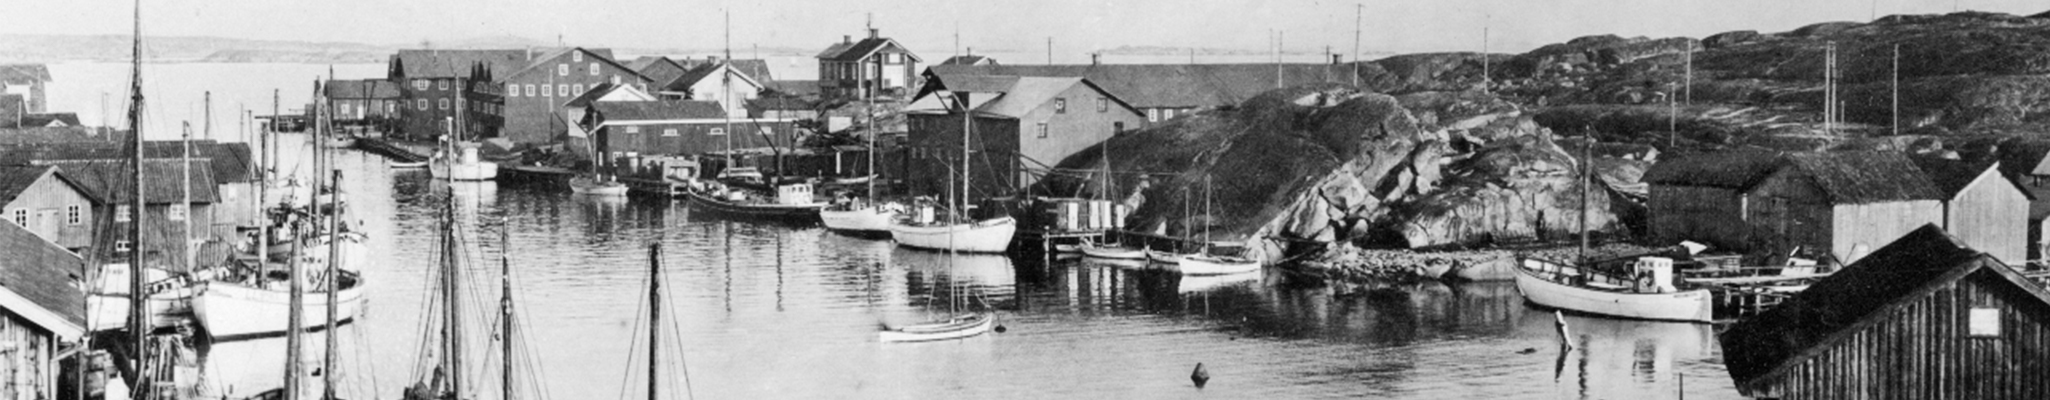 historisk bild över Smögen och Smögens båthamn